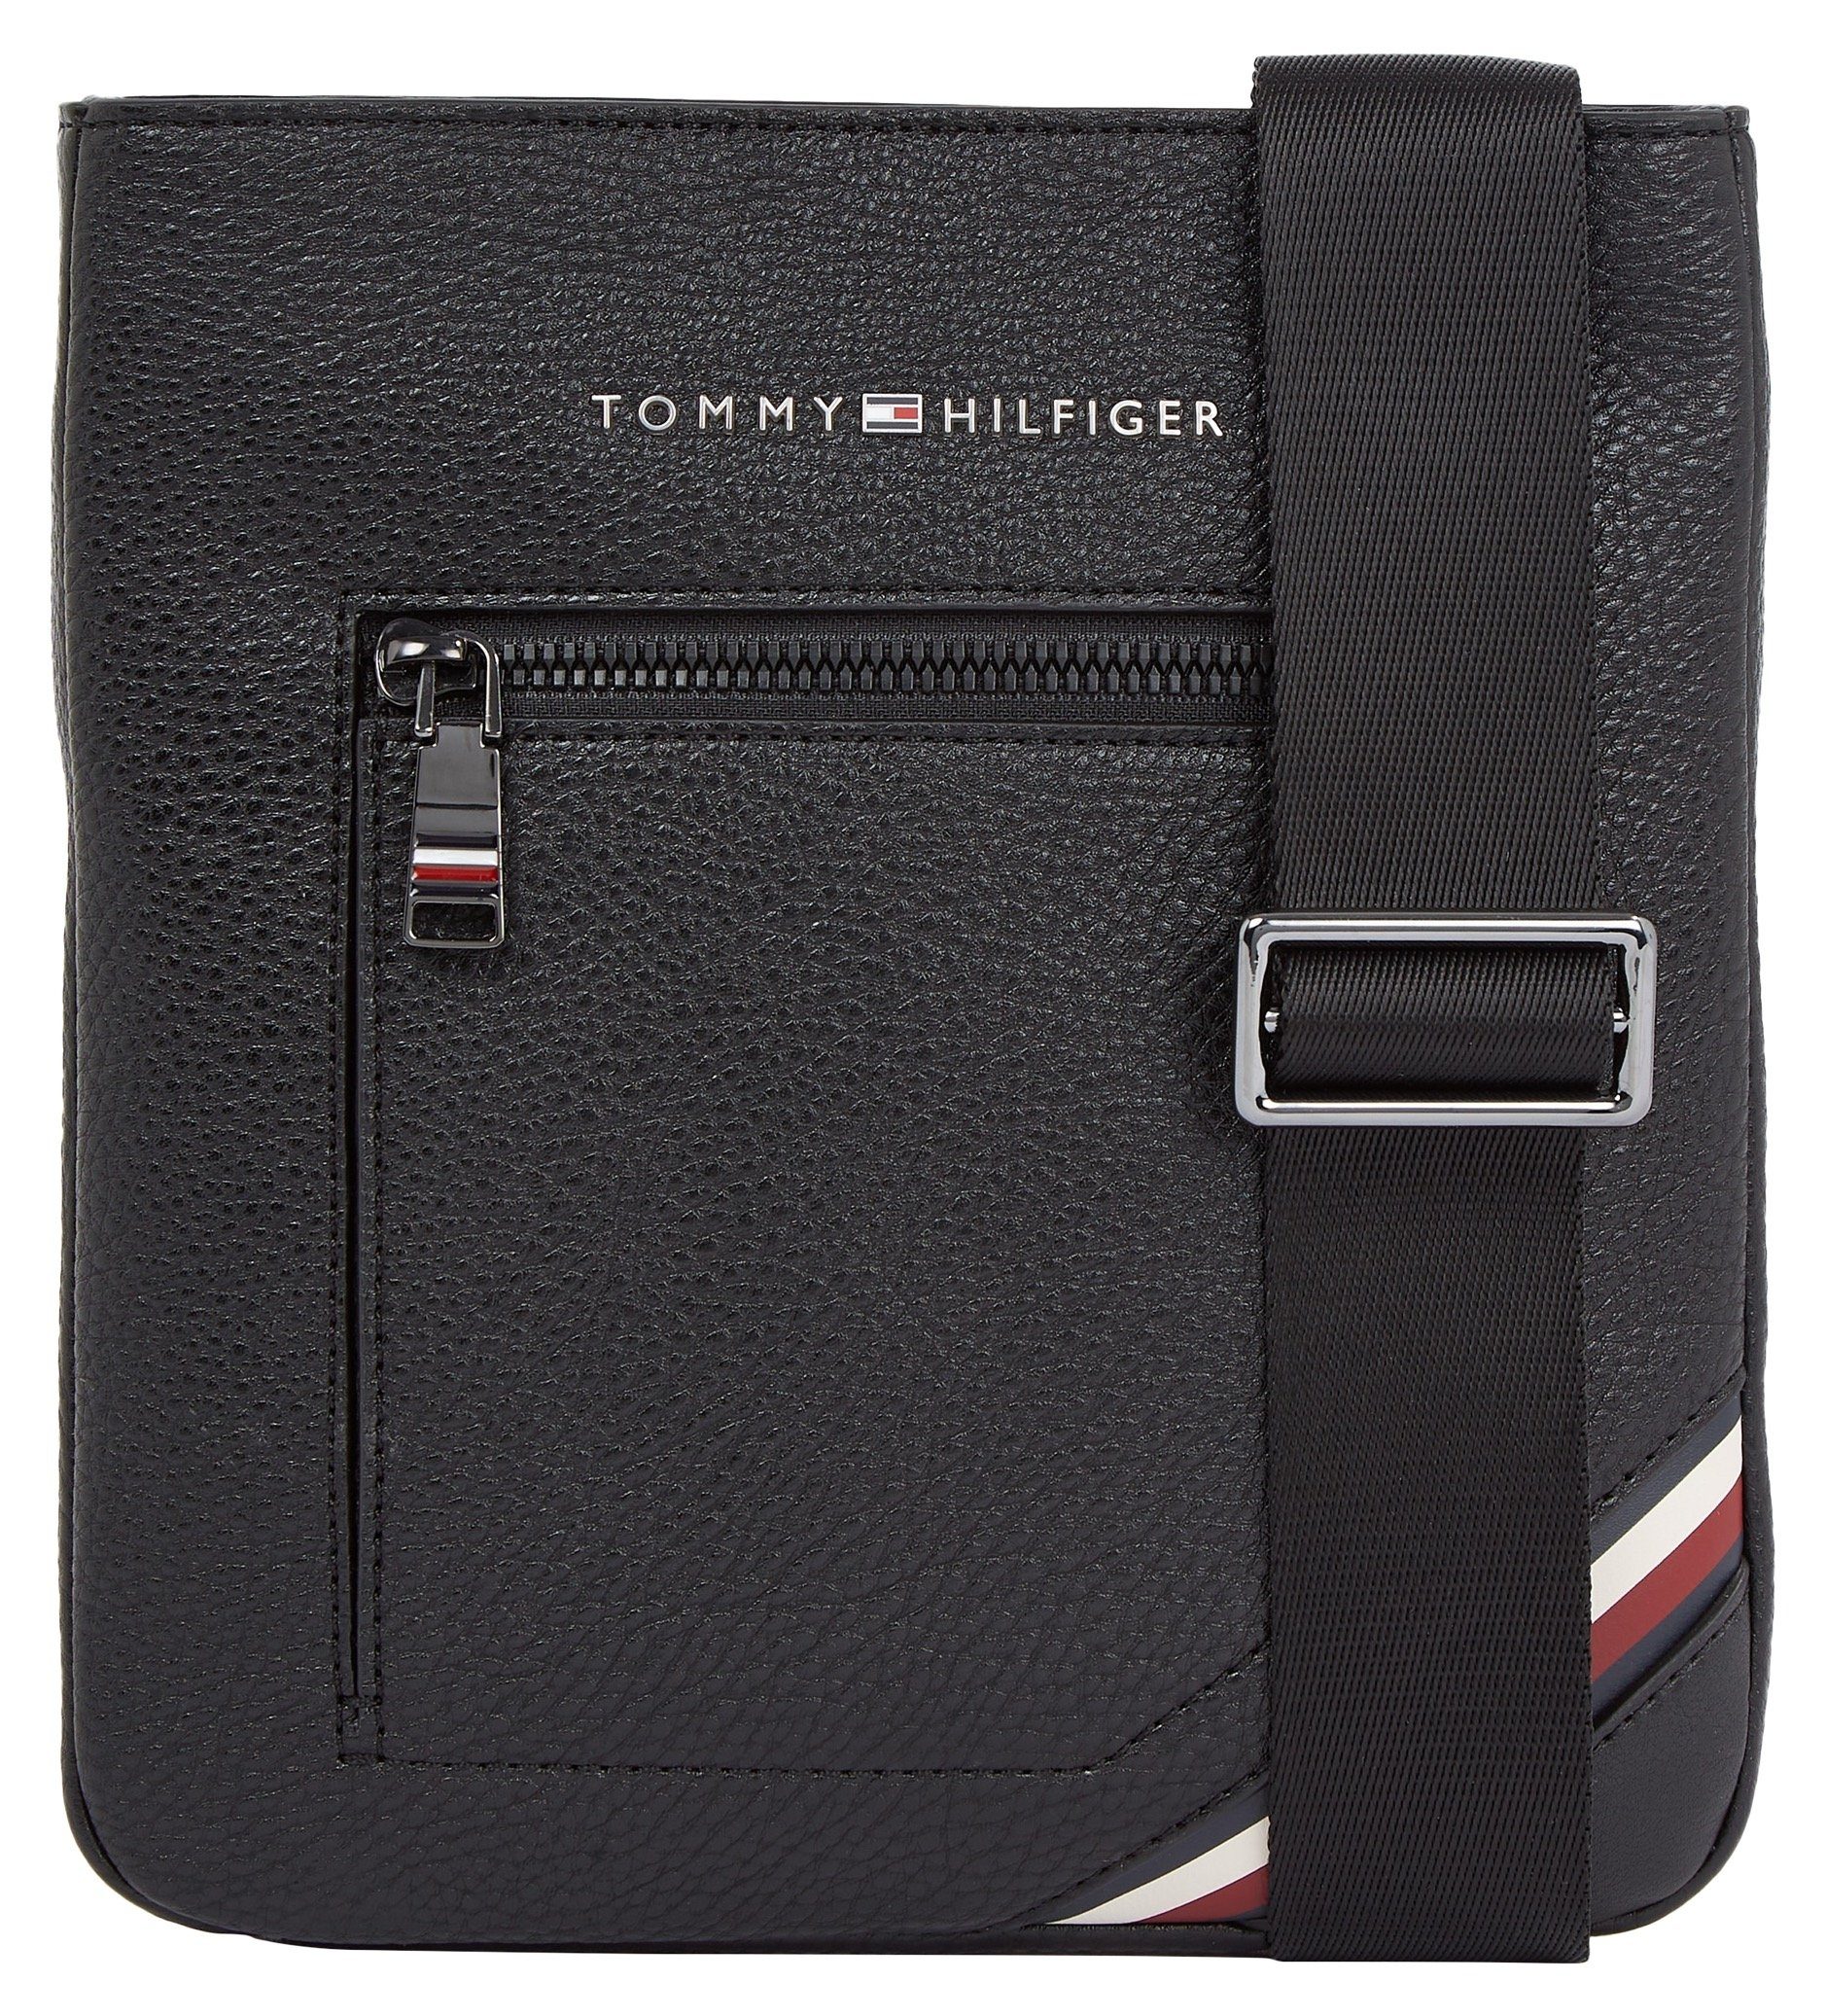 Begrenztes Erscheinungsbild praktischen Bag Hilfiger im Design MINI CROSSOVER, CENTRAL TH Mini Tommy